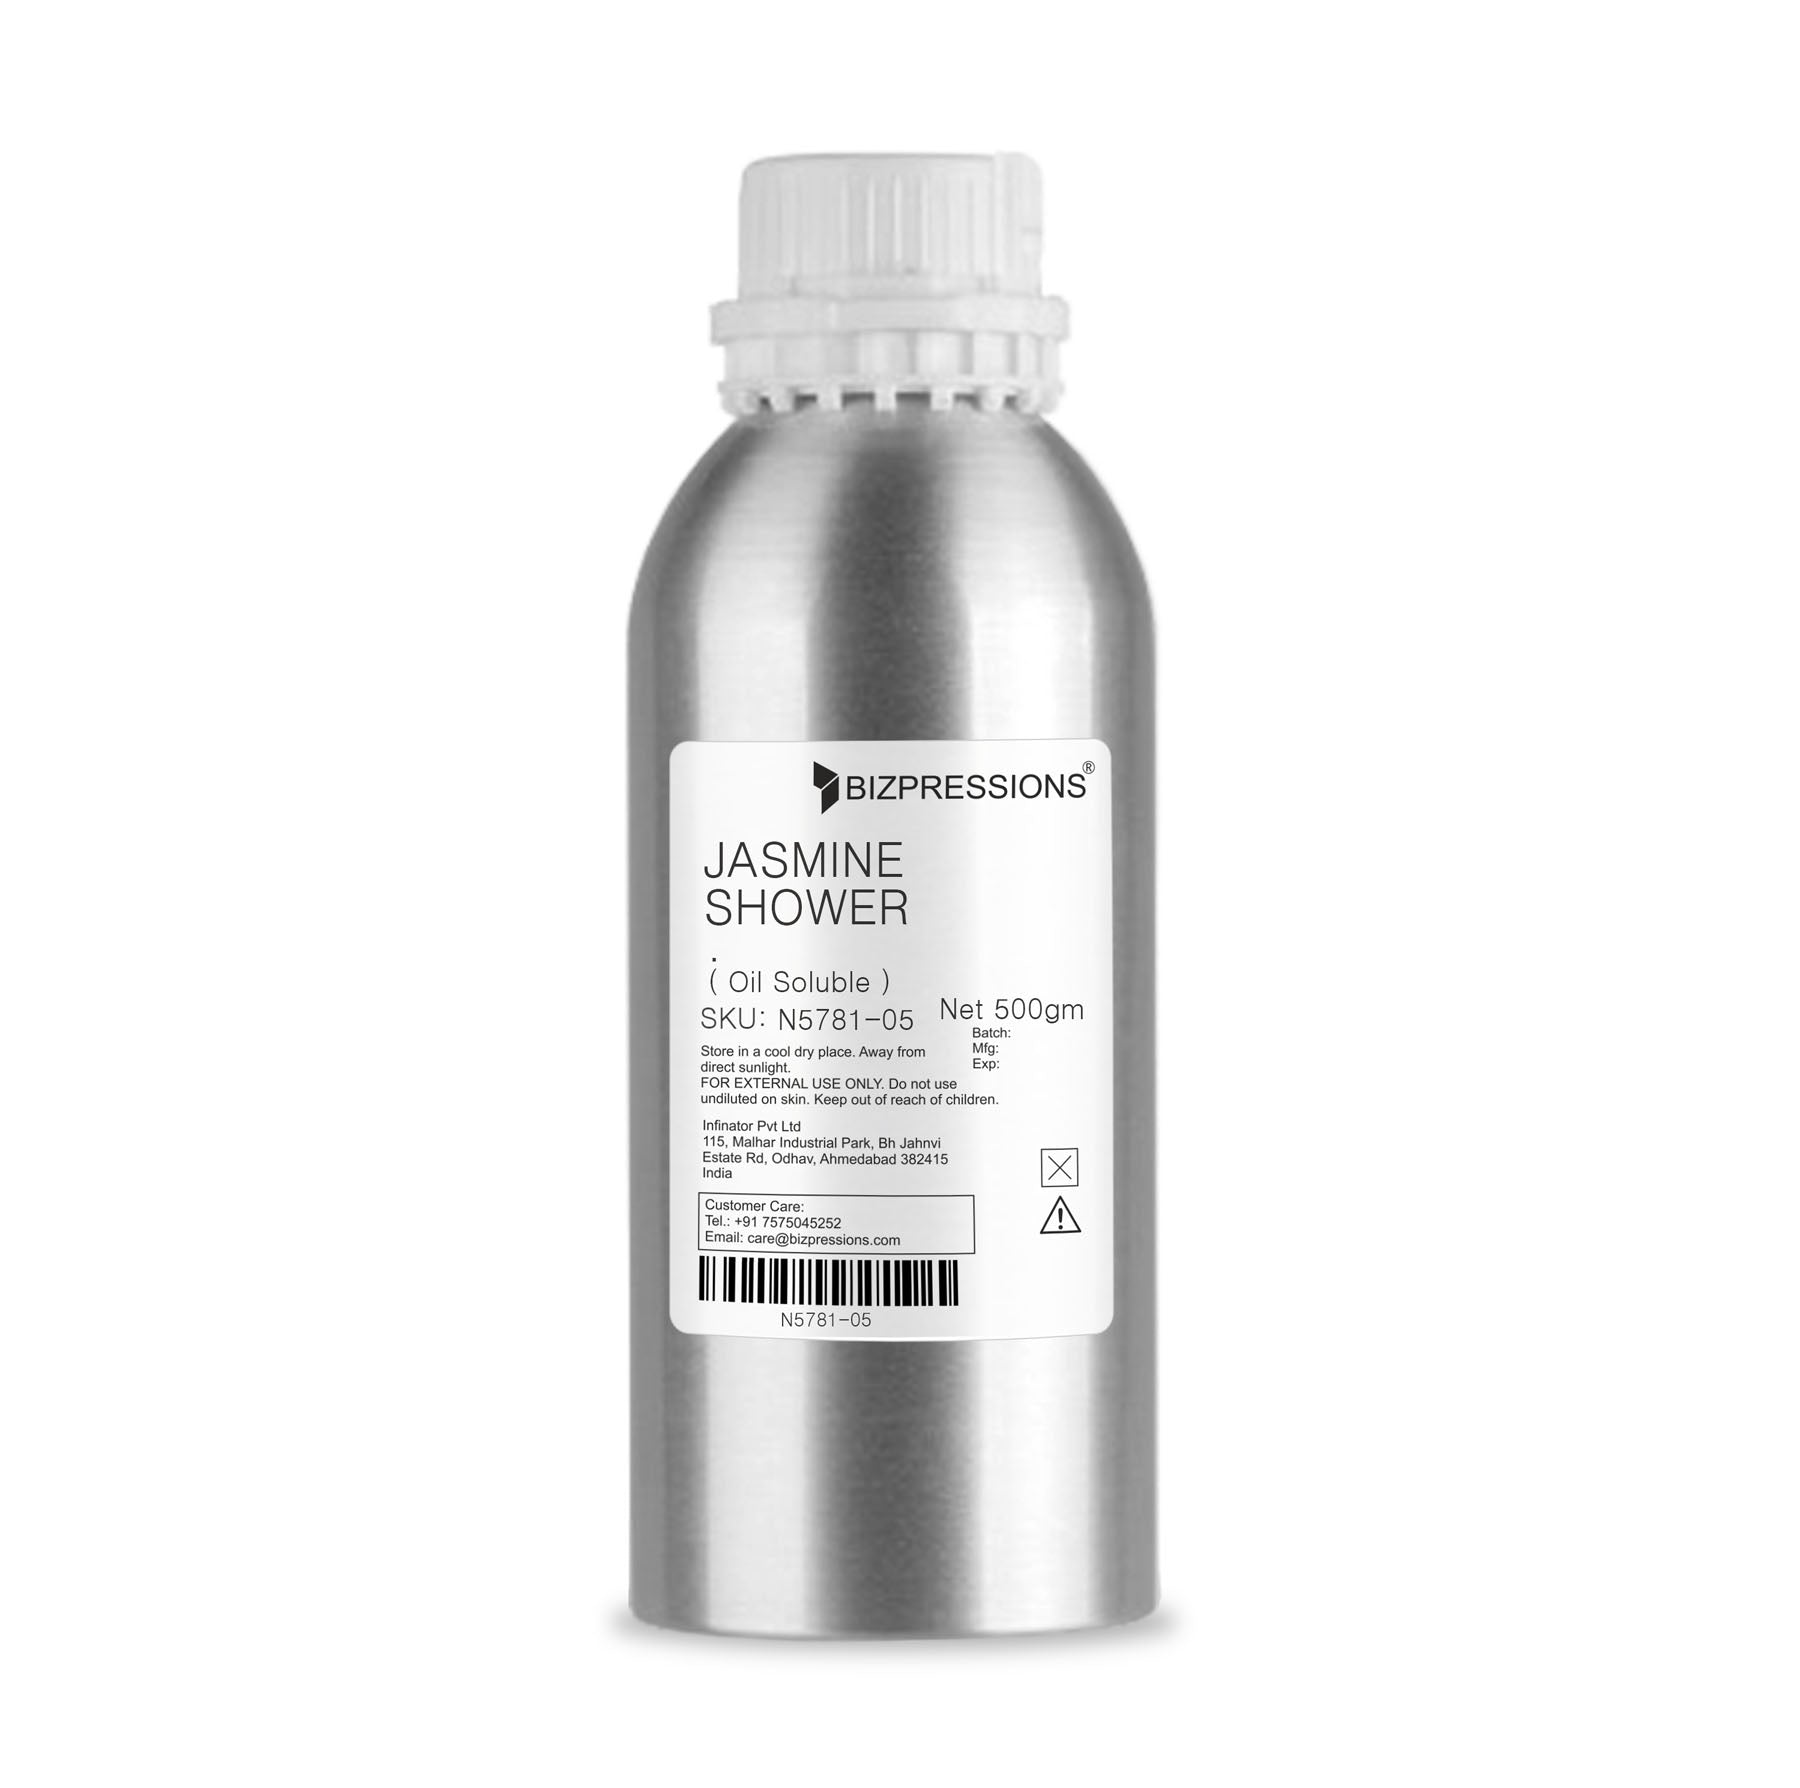 JASMINE SHOWER - Fragrance ( Oil Soluble ) - 500 gm